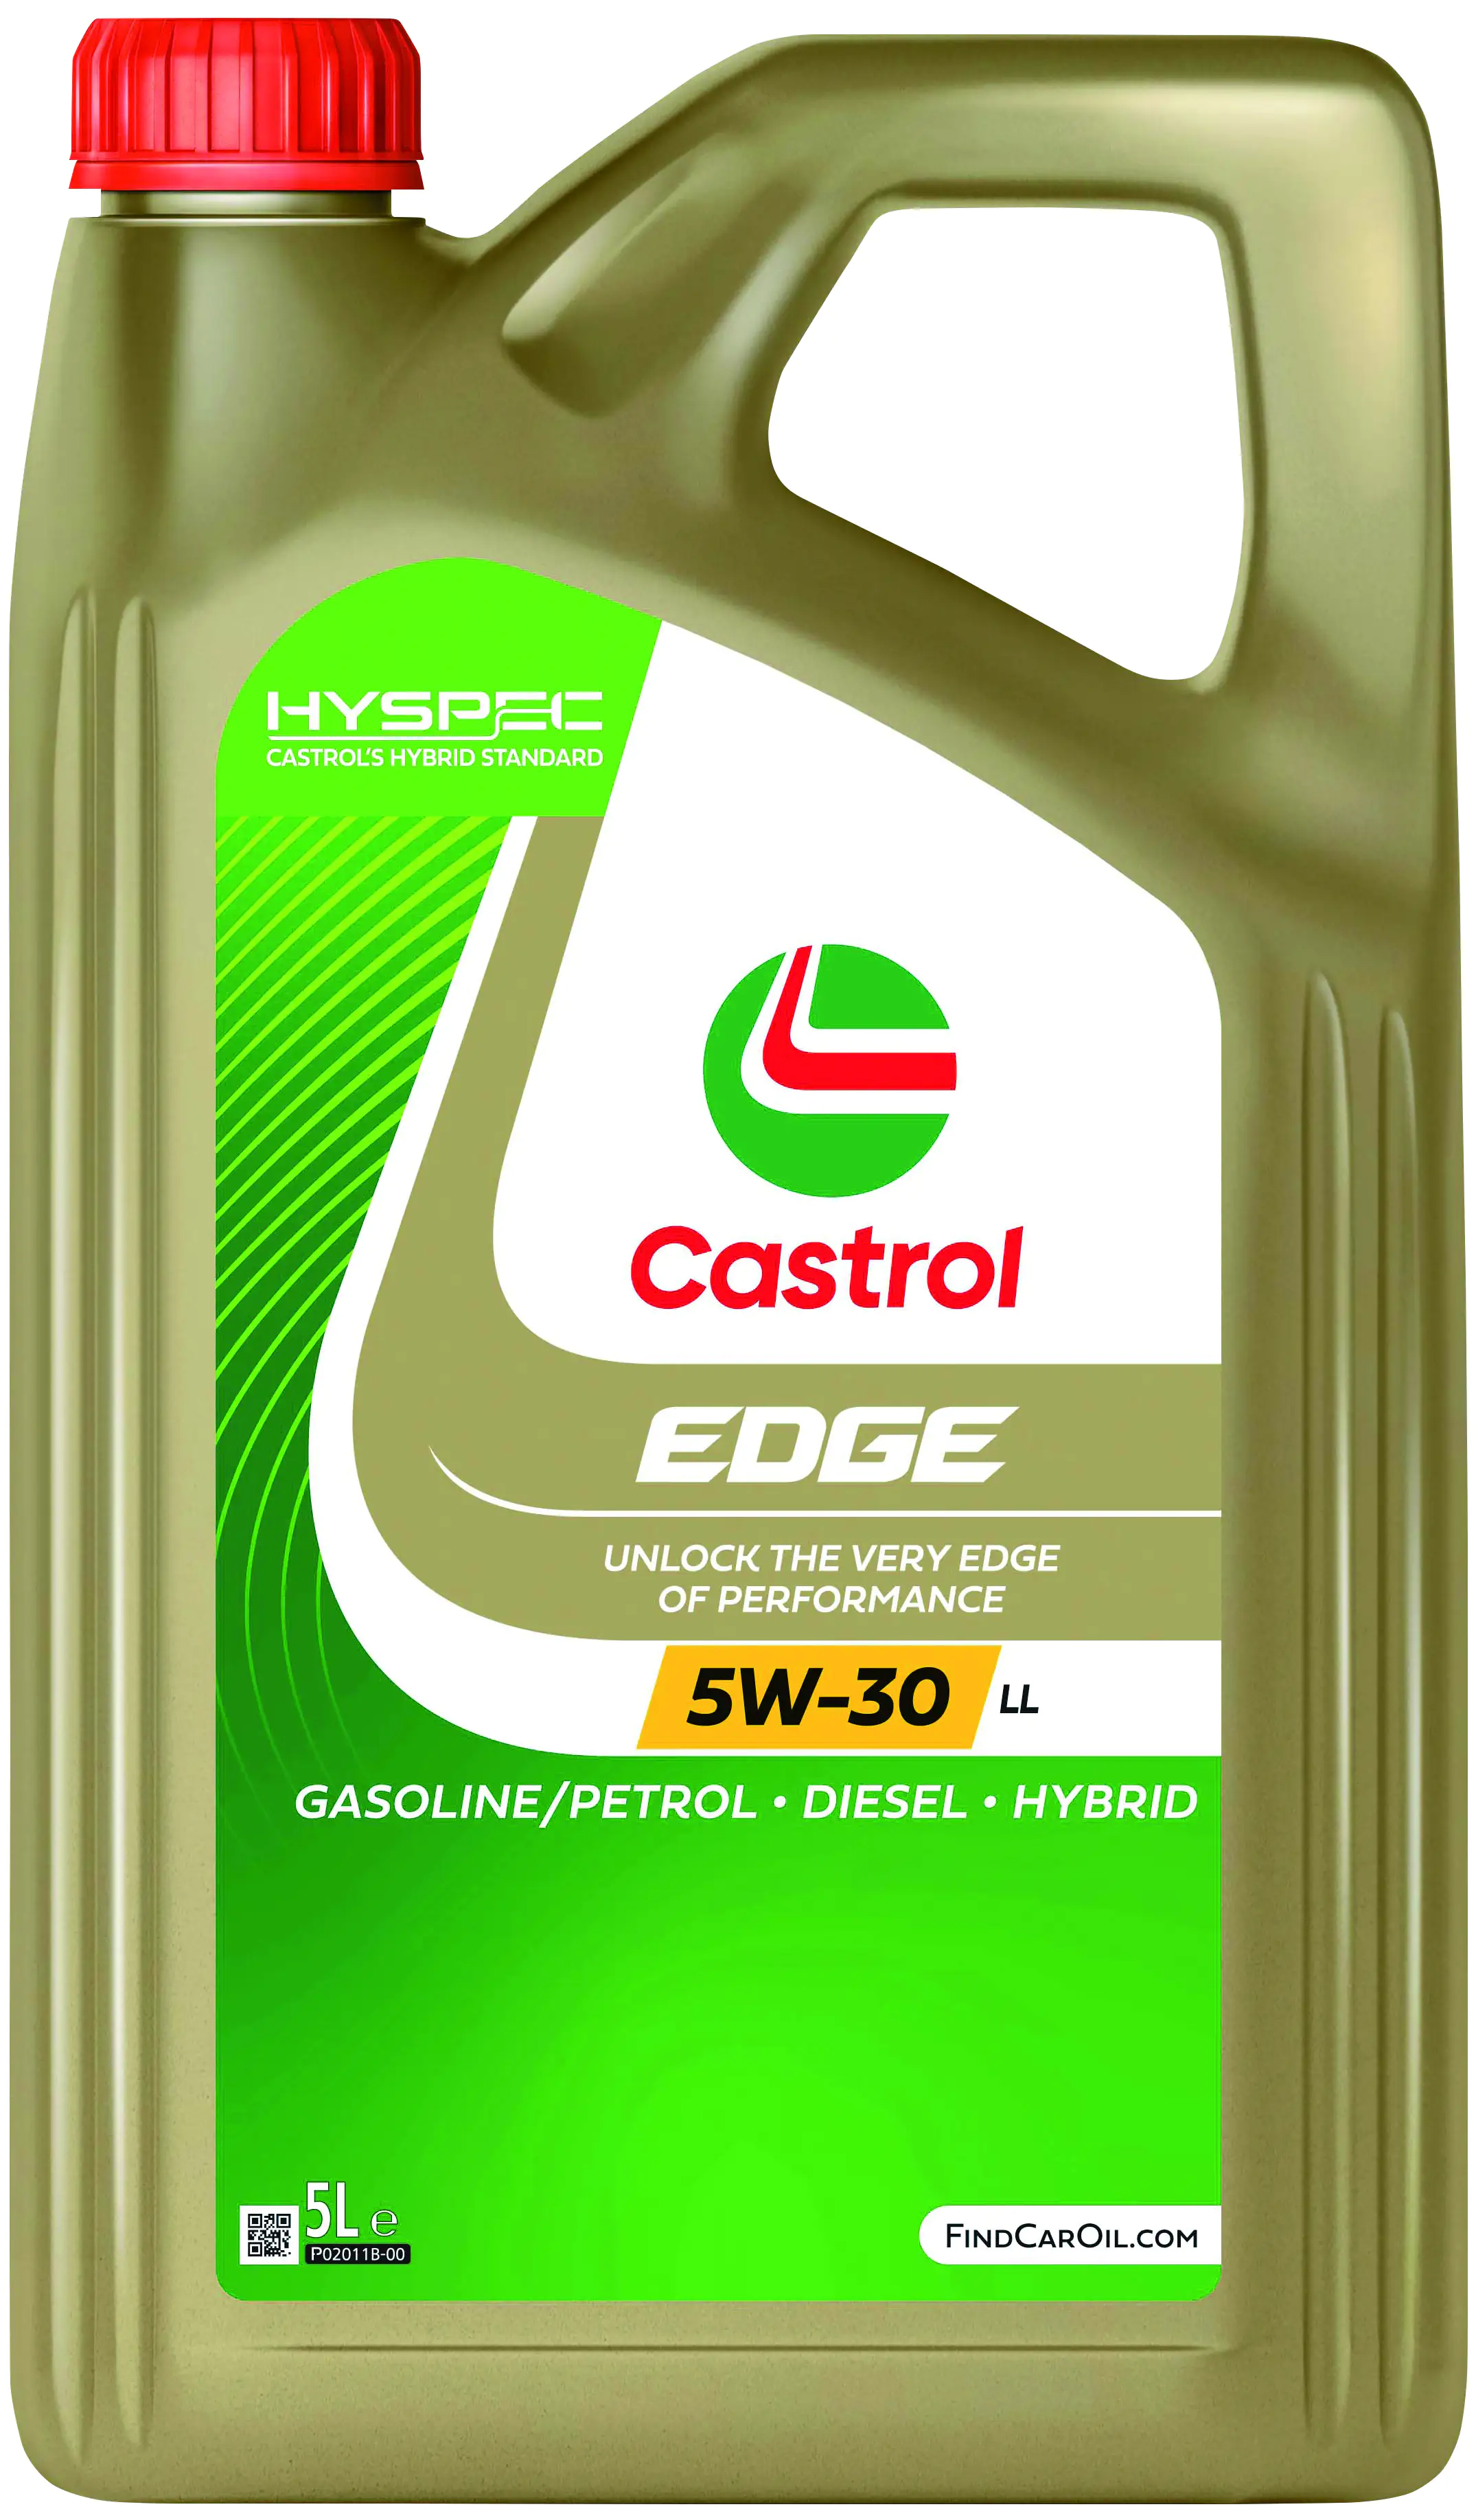 Castrol Motoröl Edge 5W-30 LL 5L kaufen